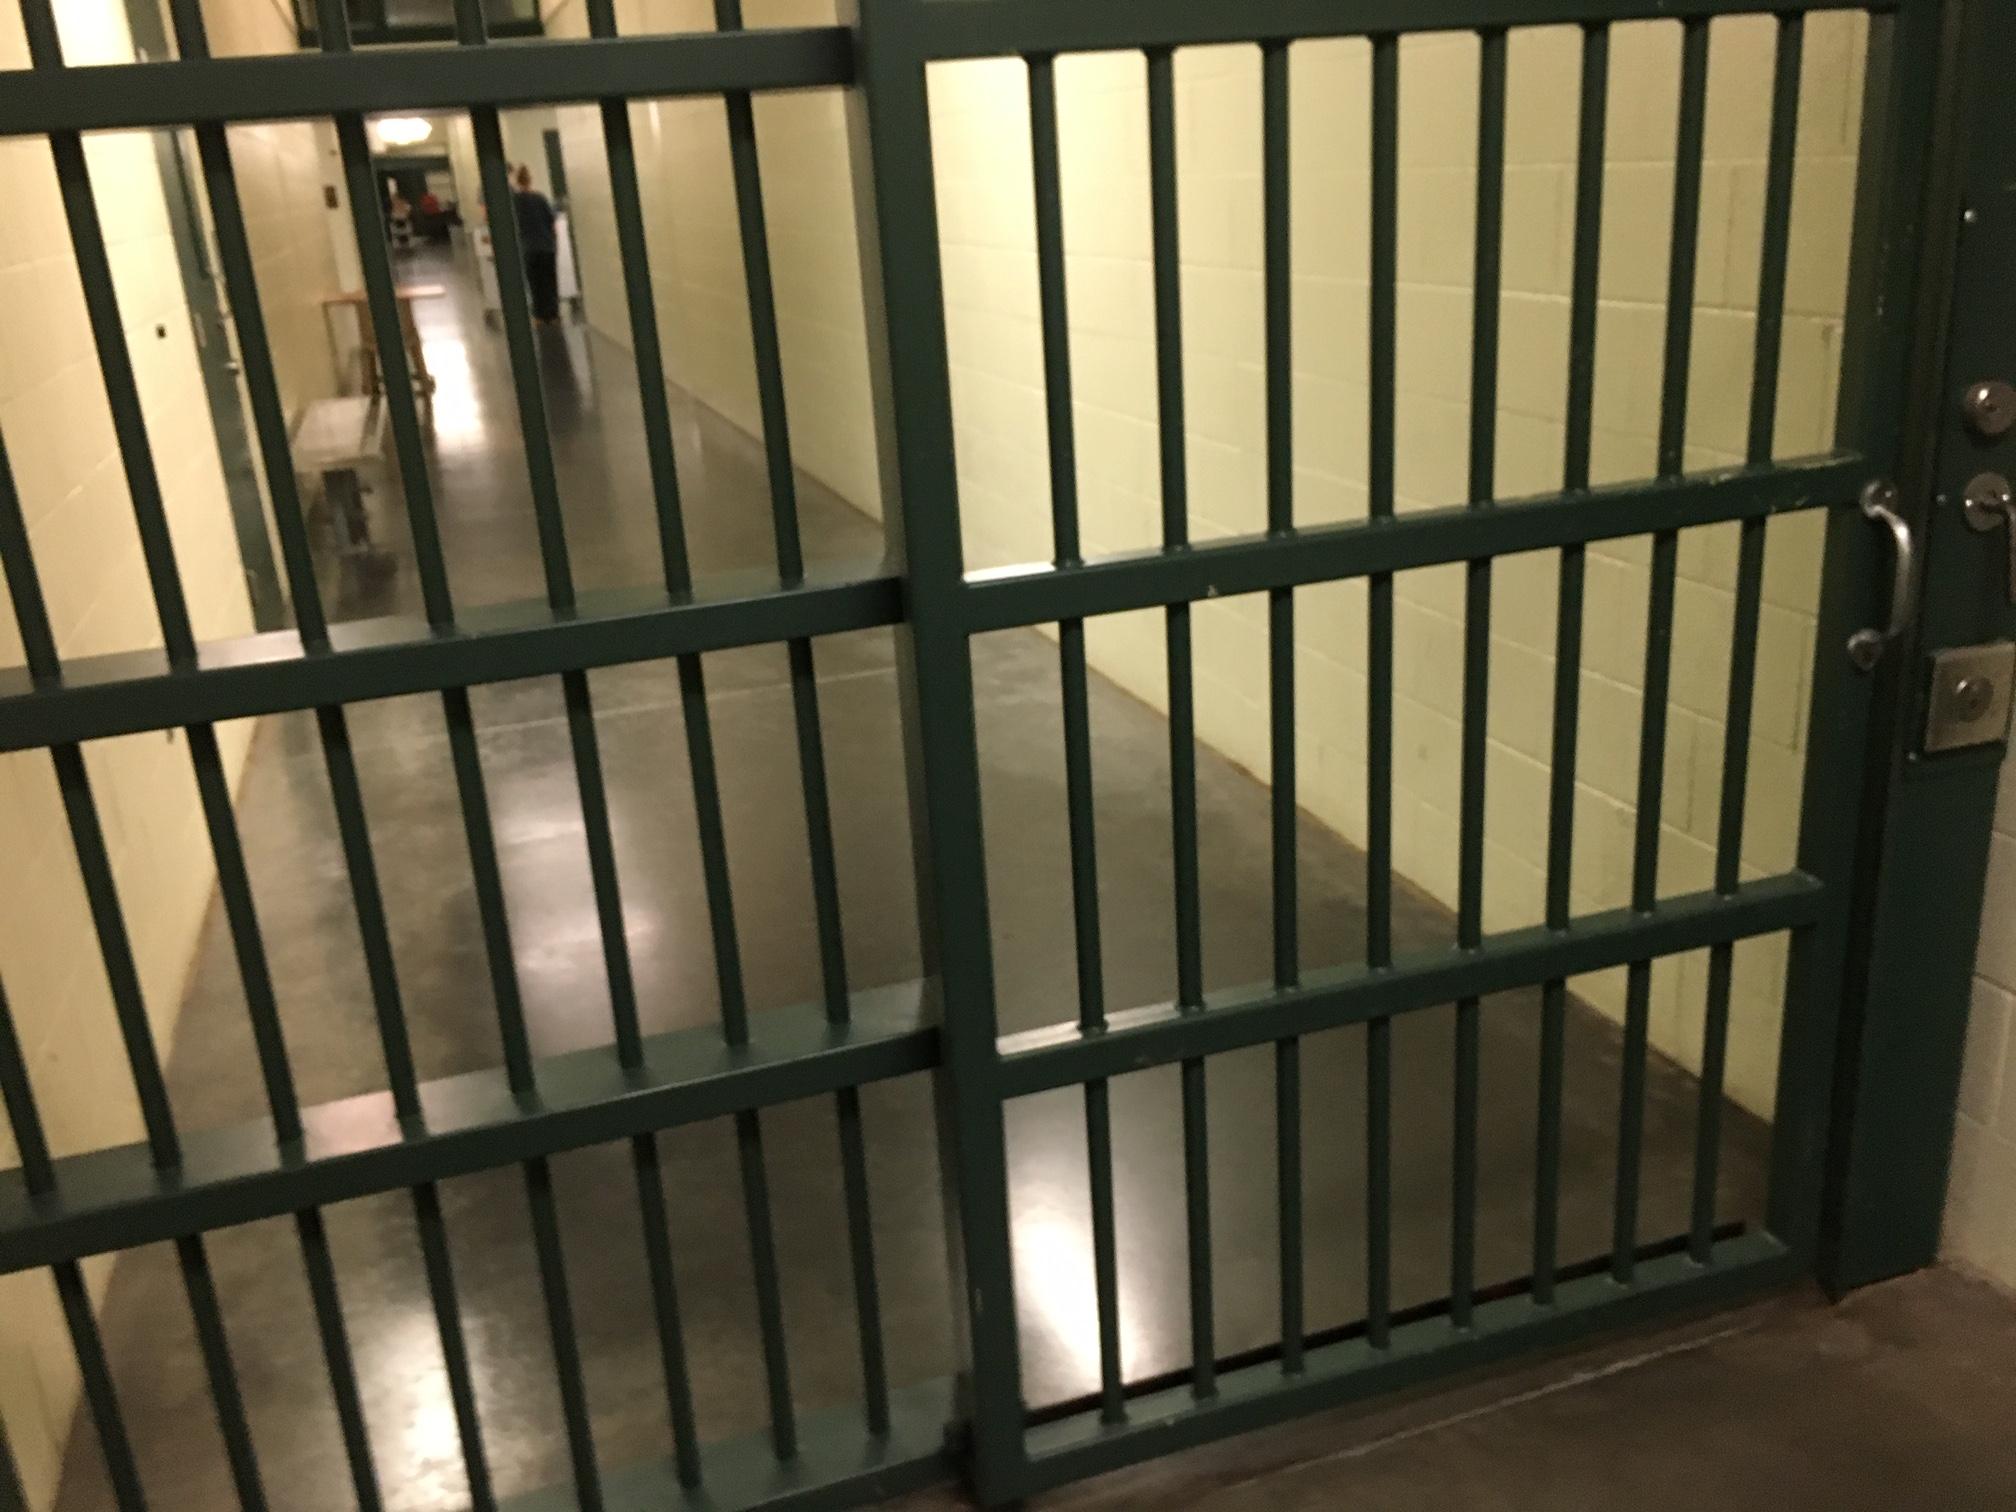 Suspiciuni de fraudă la concursul de ocupare a posturilor la Penitenciarul Satu Mare: Mai mulți candidaţi ar fi fost picaţi pentru că erau „prea pregătiţi”